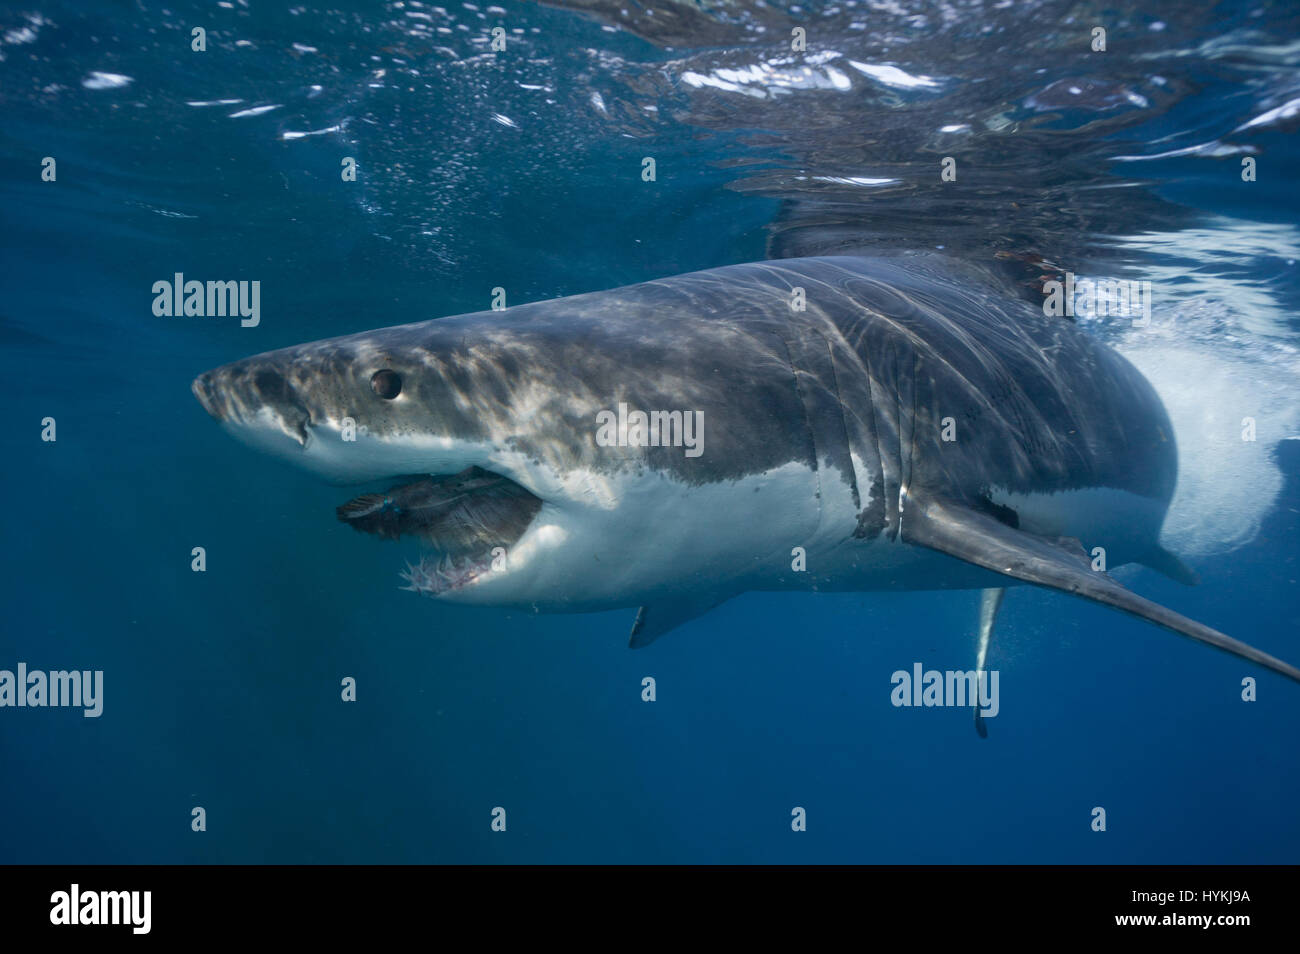 De superbes images ont capturé ce qui pourrait être le plus grand requin  blanc dans le monde. L'immense prédateur vient face à face avec deux  plongeurs dans une cage qu'il met à